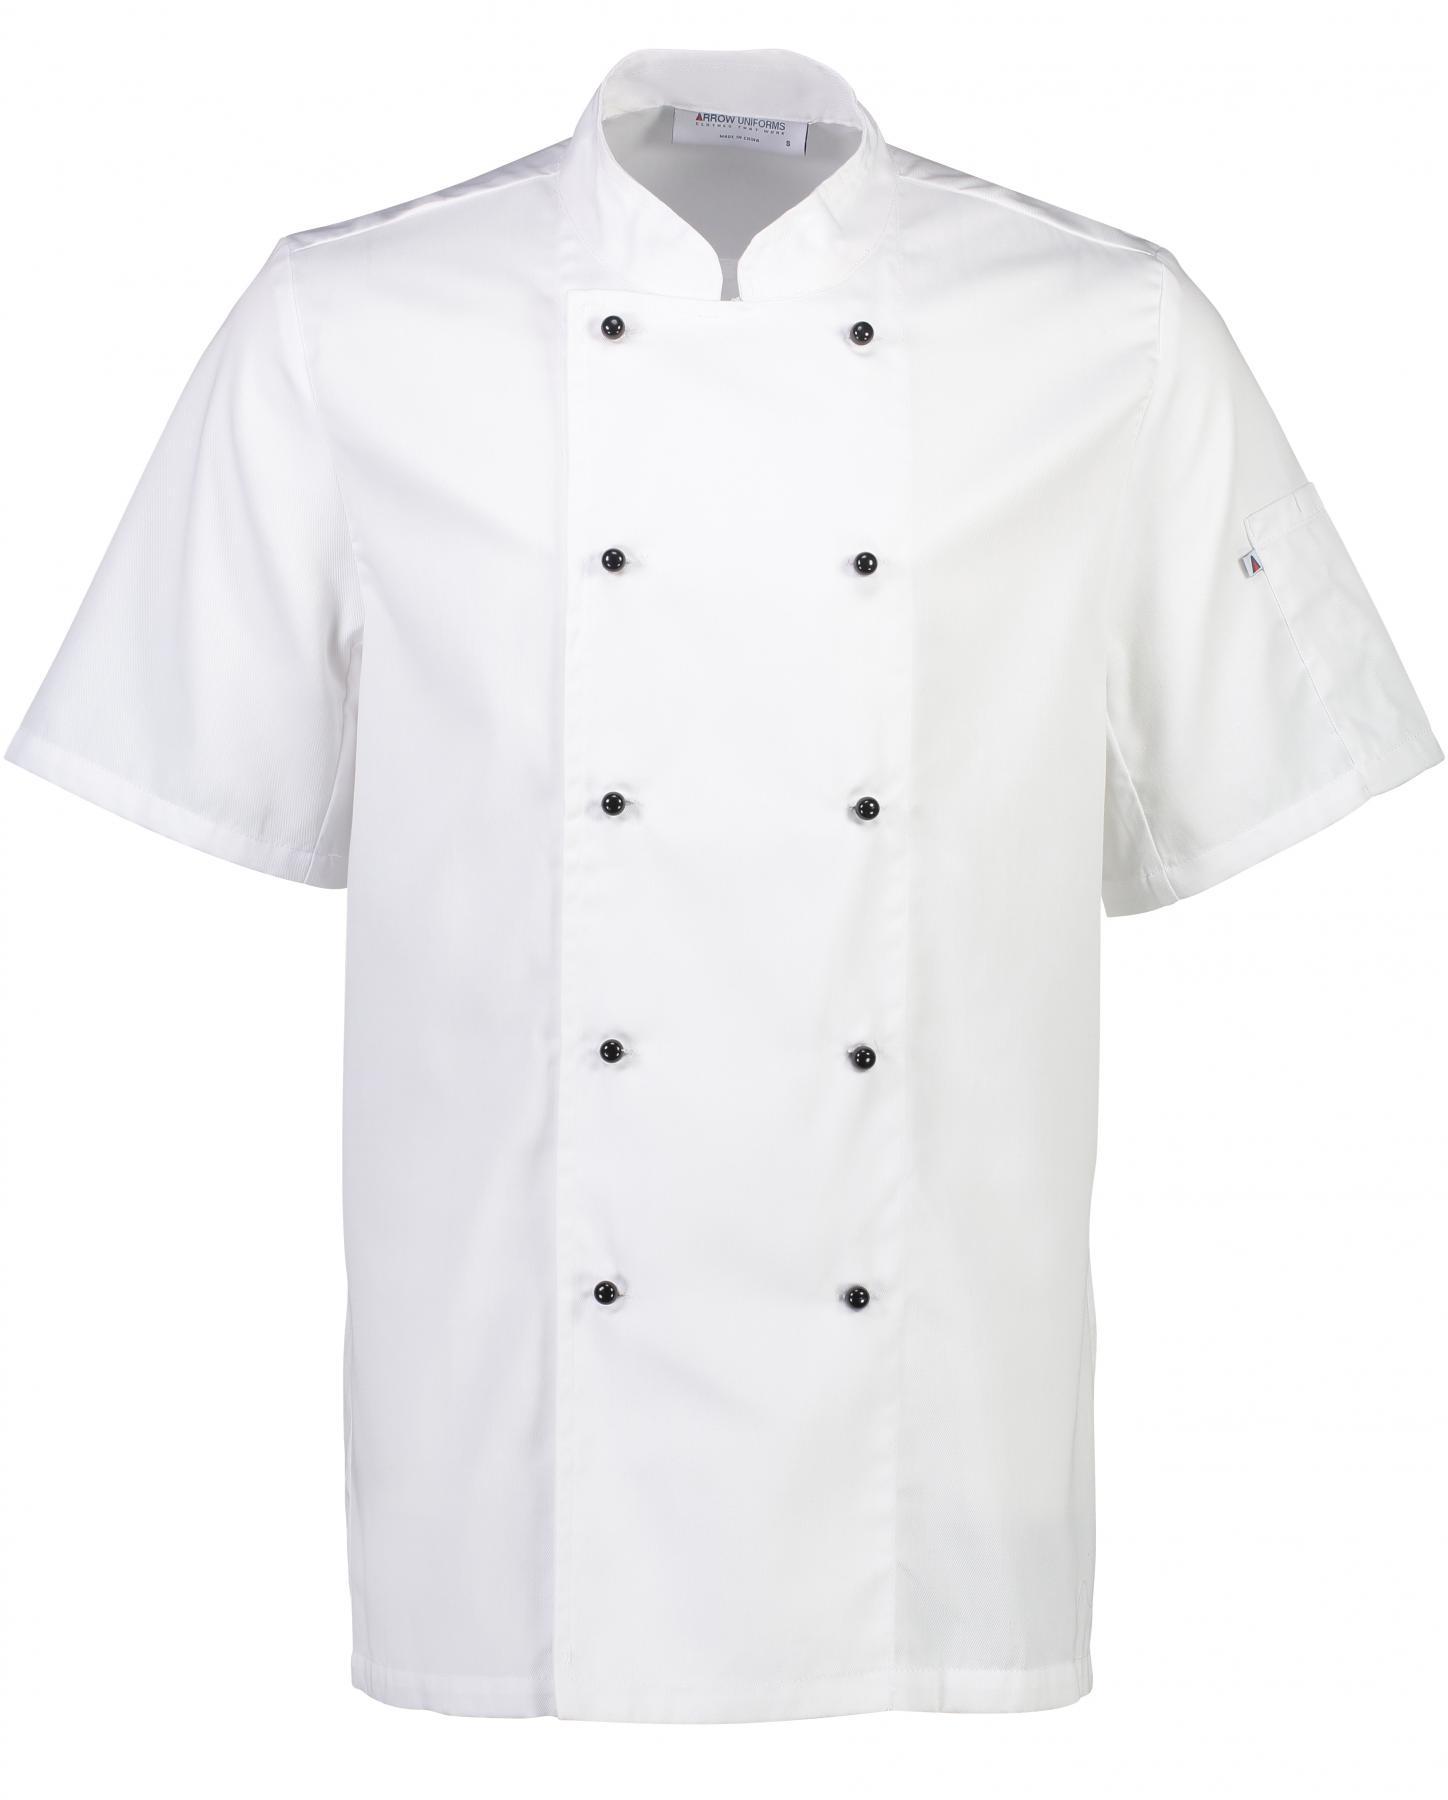 Club II Chefs Jacket Short Sleeve